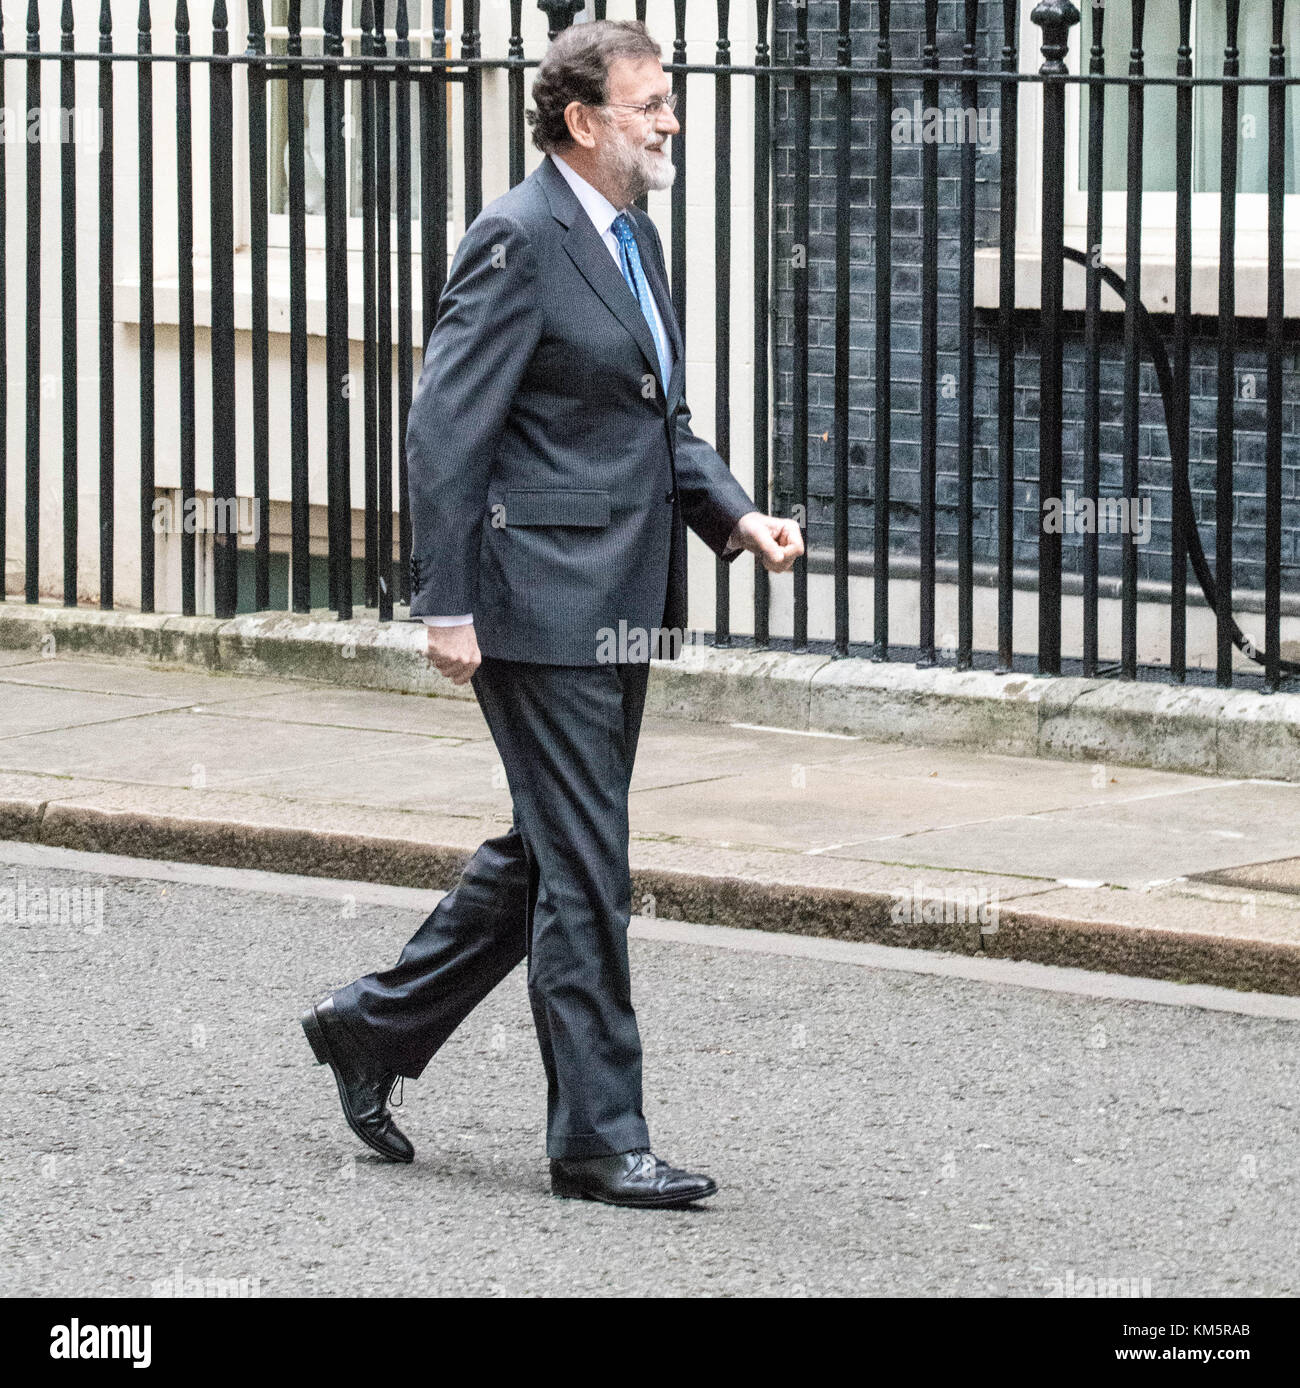 Londres, Royaume-Uni. 5 décembre, 2017. Le premier ministre espagnol Mariano Rajoy arrive à Downing Street pour répondre pm theresa peut, par l'entrée arrière à cause de manifestants catalans de bloquer l'avant de Downing Street crédit : Ian Davidson/Alamy live news Banque D'Images